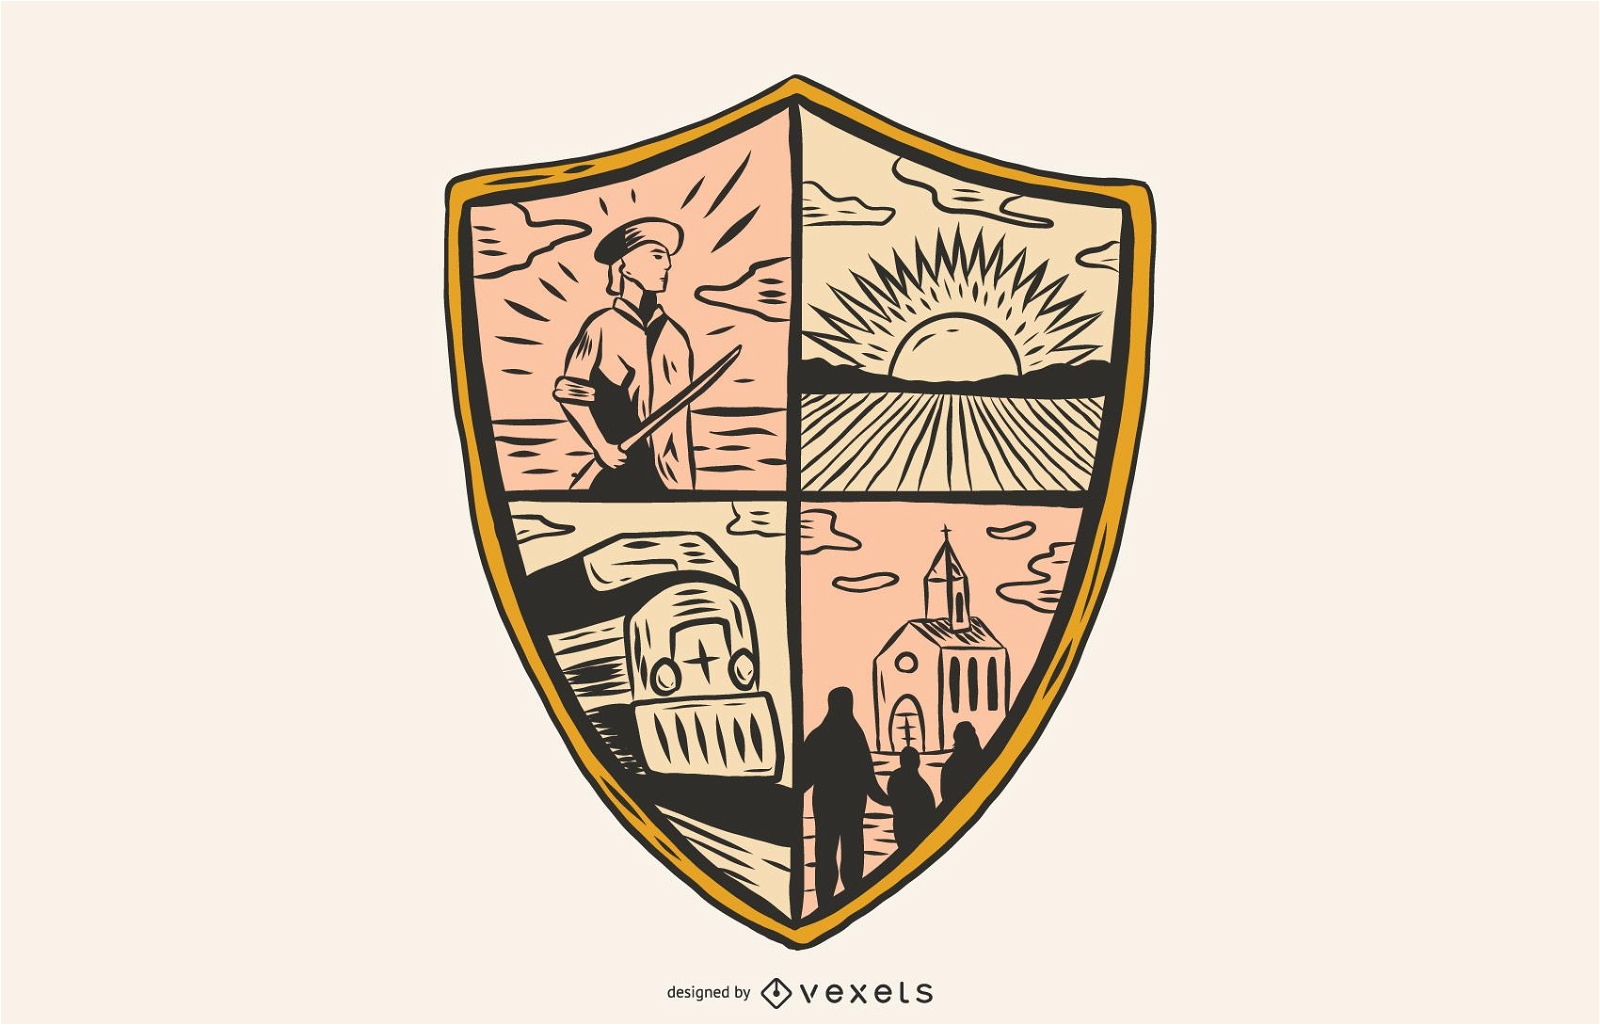 Ilustraci?n del escudo del logotipo